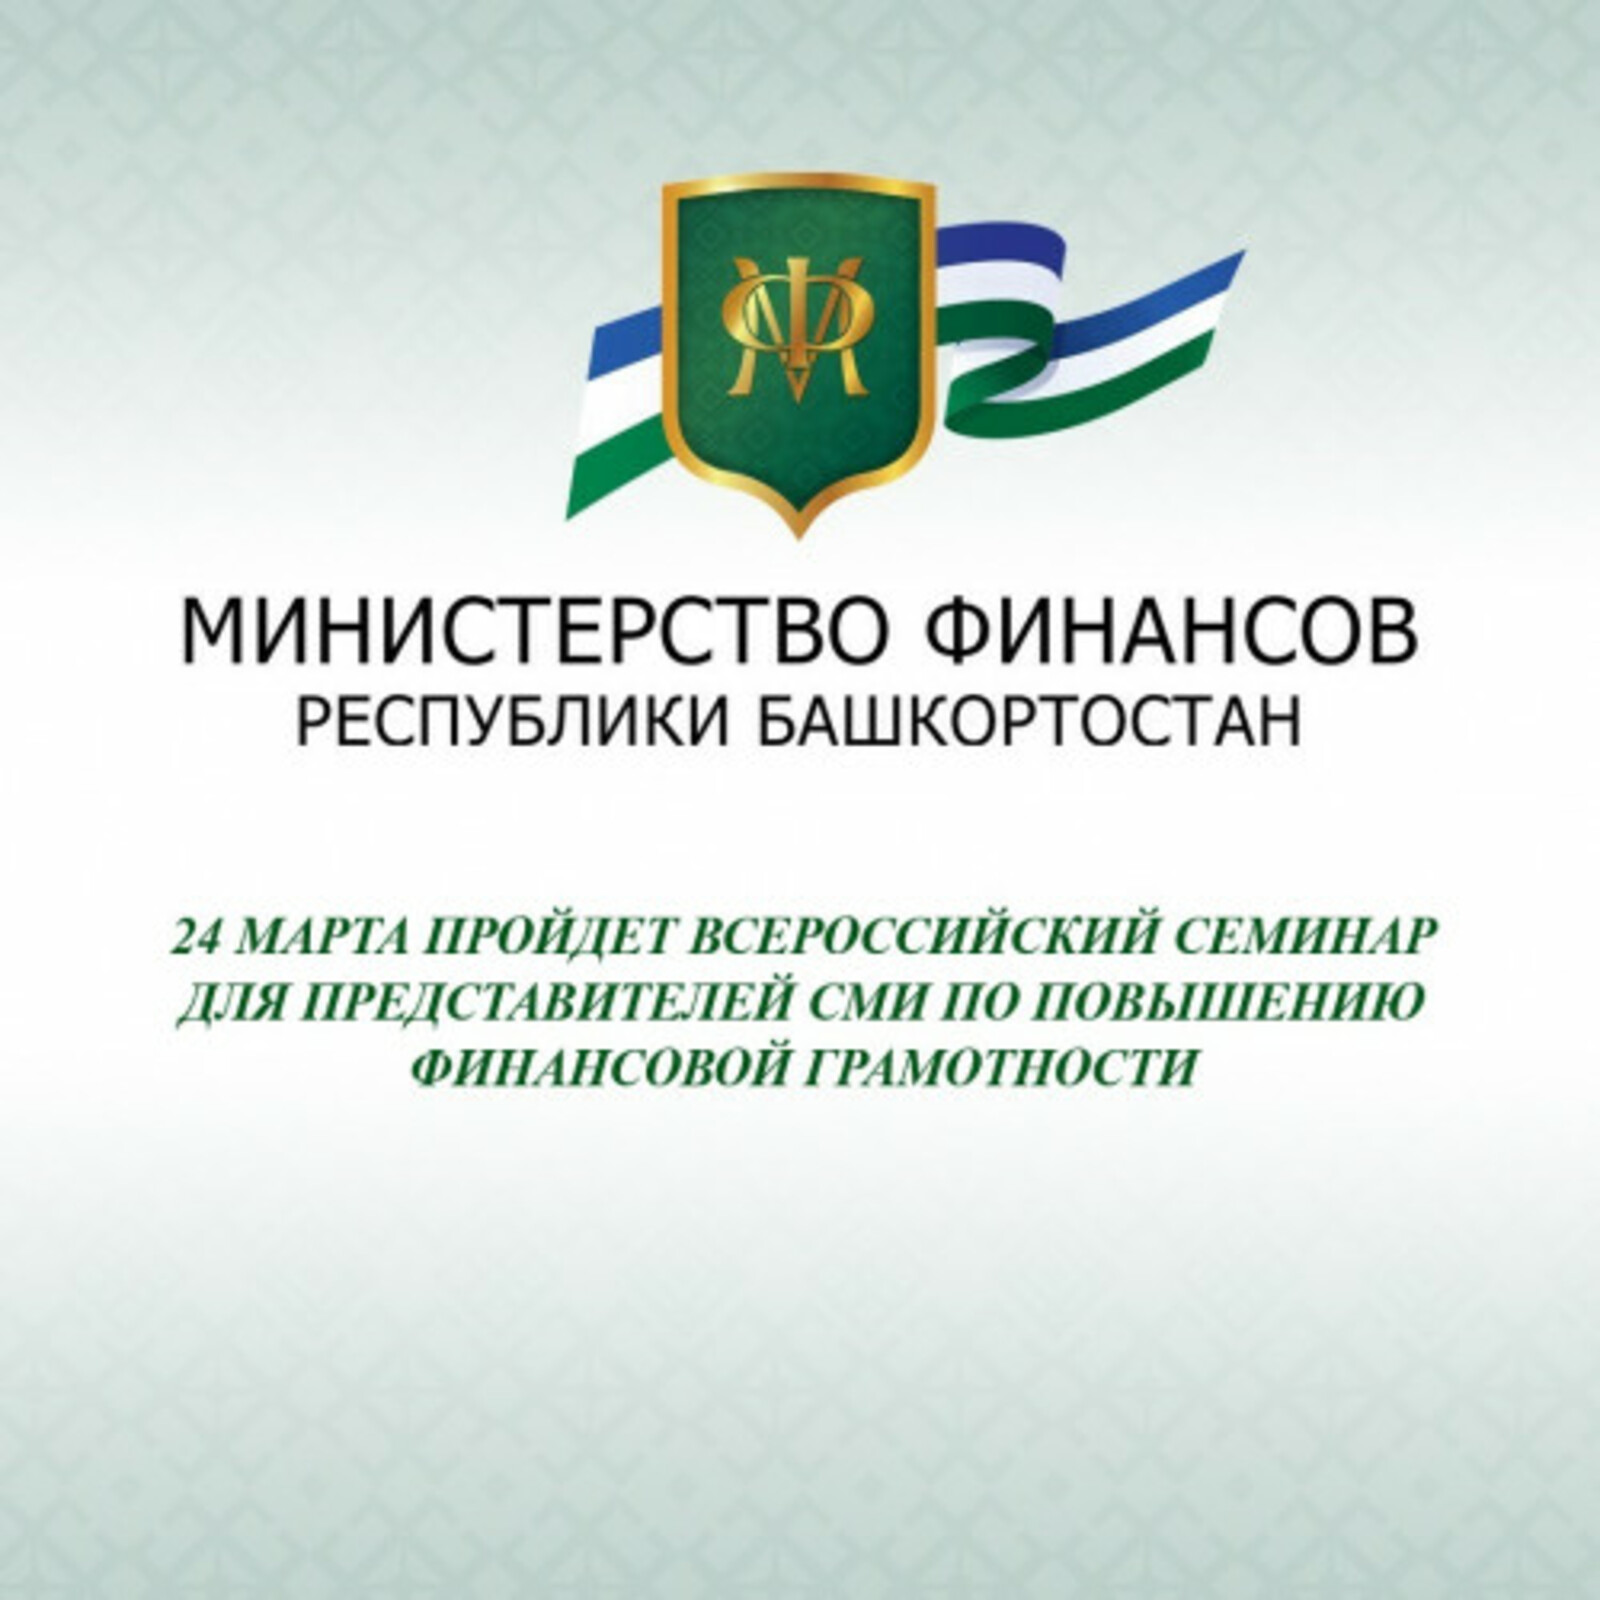 24 марта пройдет Всероссийский семинар для представителей СМИ по повышению финансовой грамотности